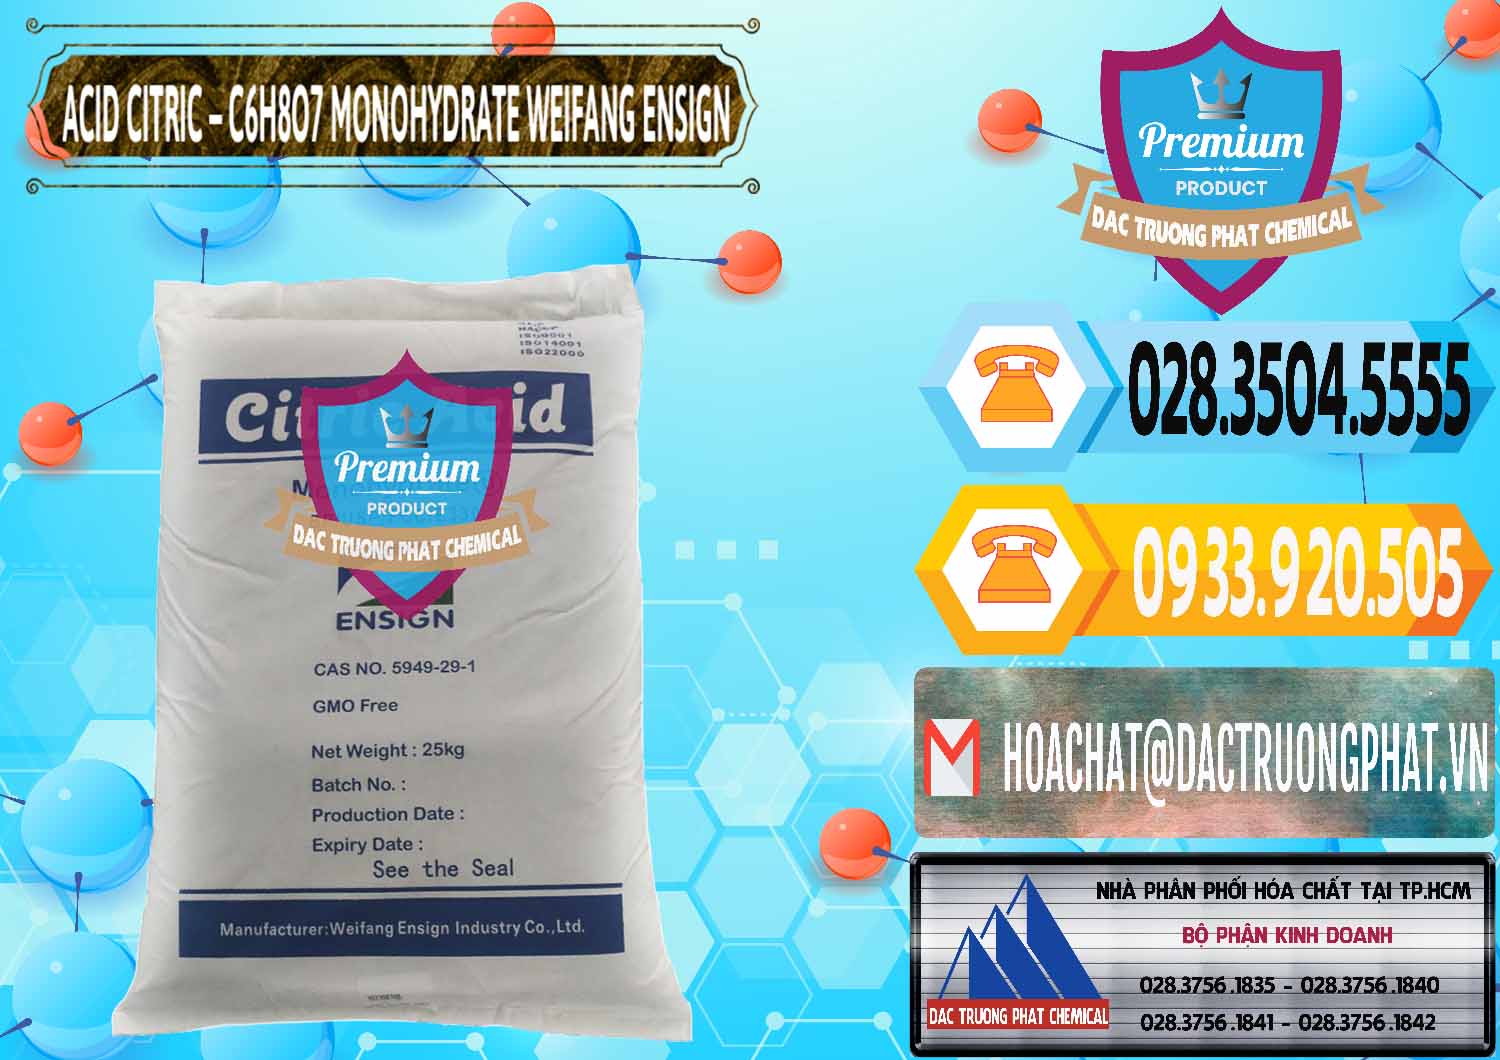 Công ty chuyên bán ( phân phối ) Acid Citric - Axit Citric Monohydrate Weifang Trung Quốc China - 0009 - Cty kinh doanh & phân phối hóa chất tại TP.HCM - hoachattayrua.net